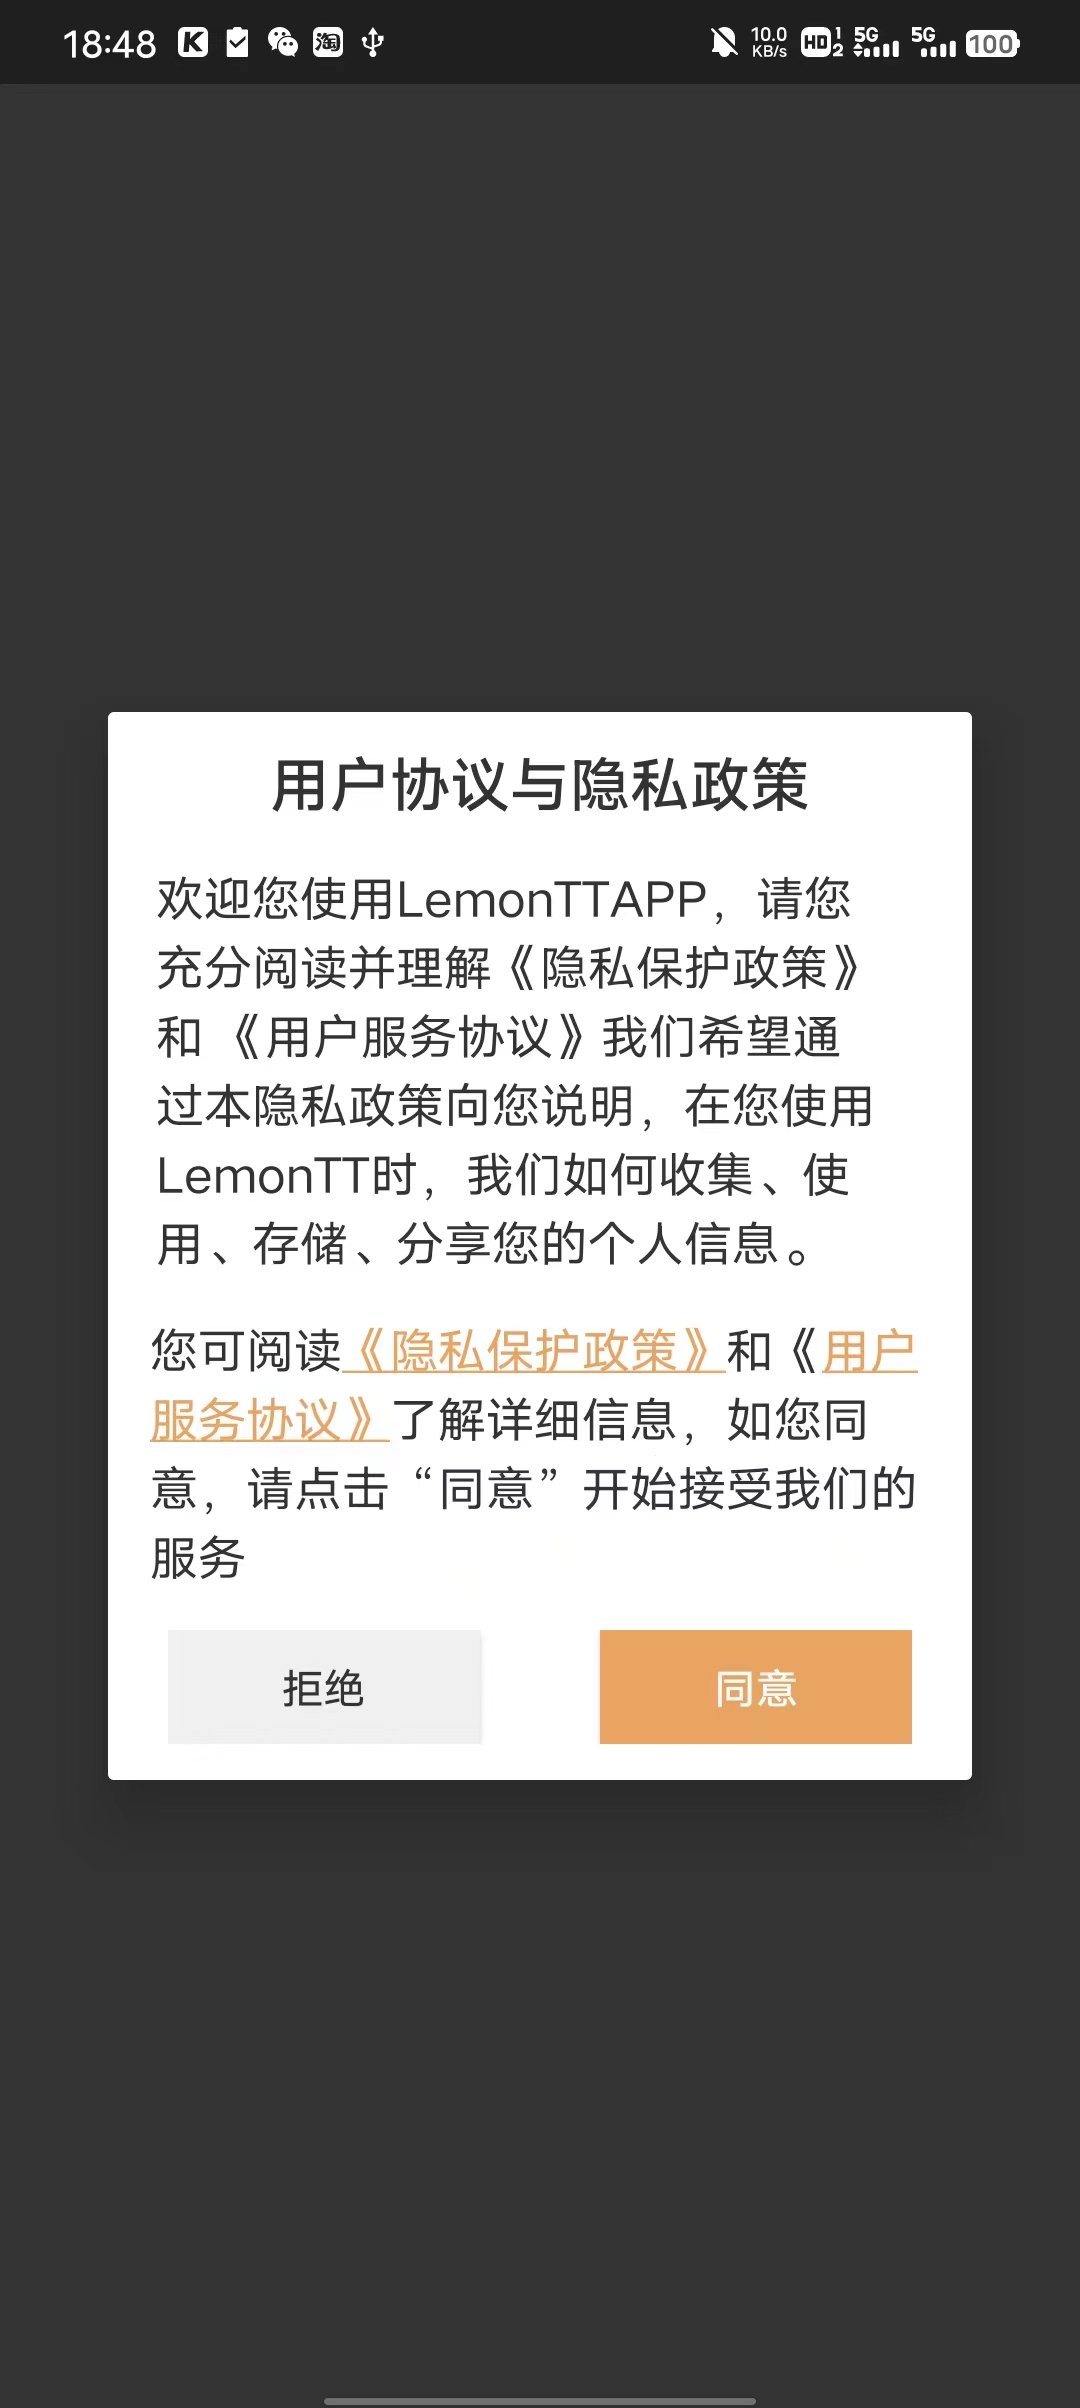 LemonTT天气预报app最新版图片1